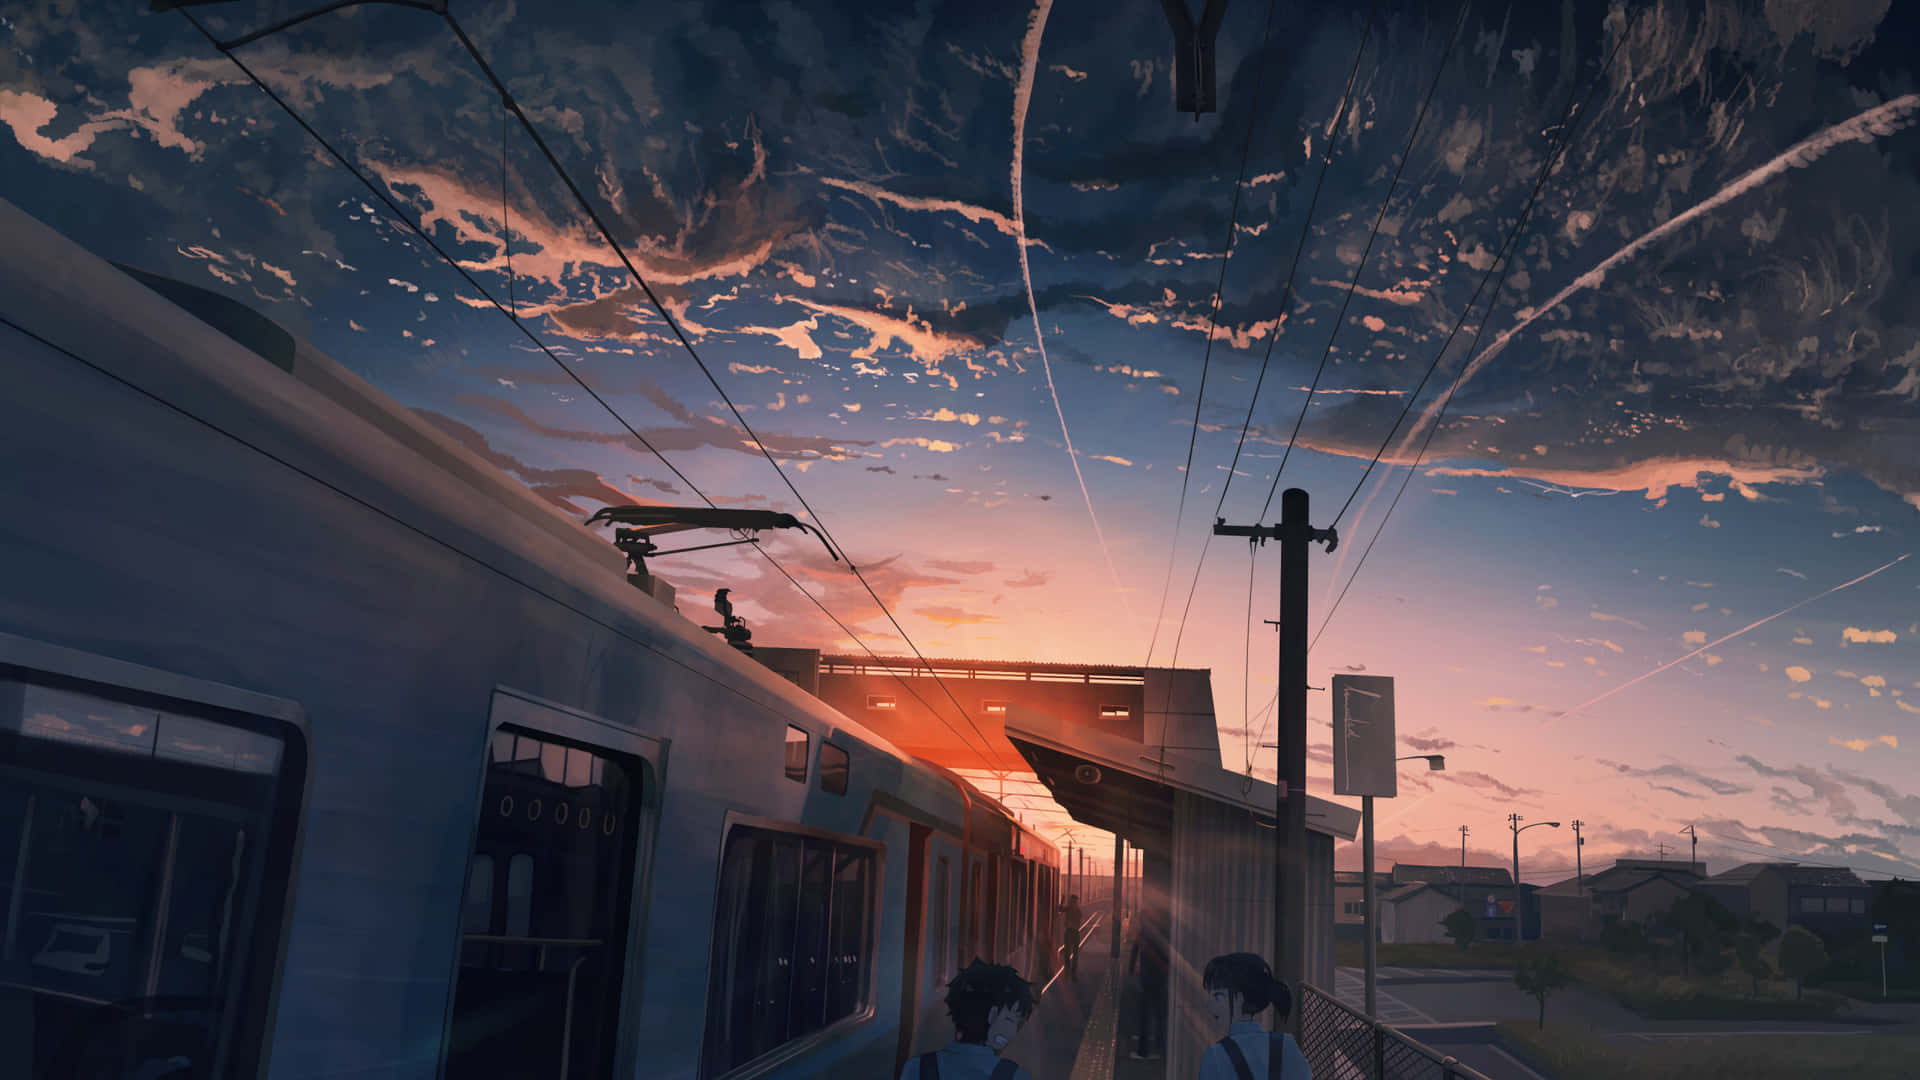 Sunset Train Station Anime Artwork Wallpaper